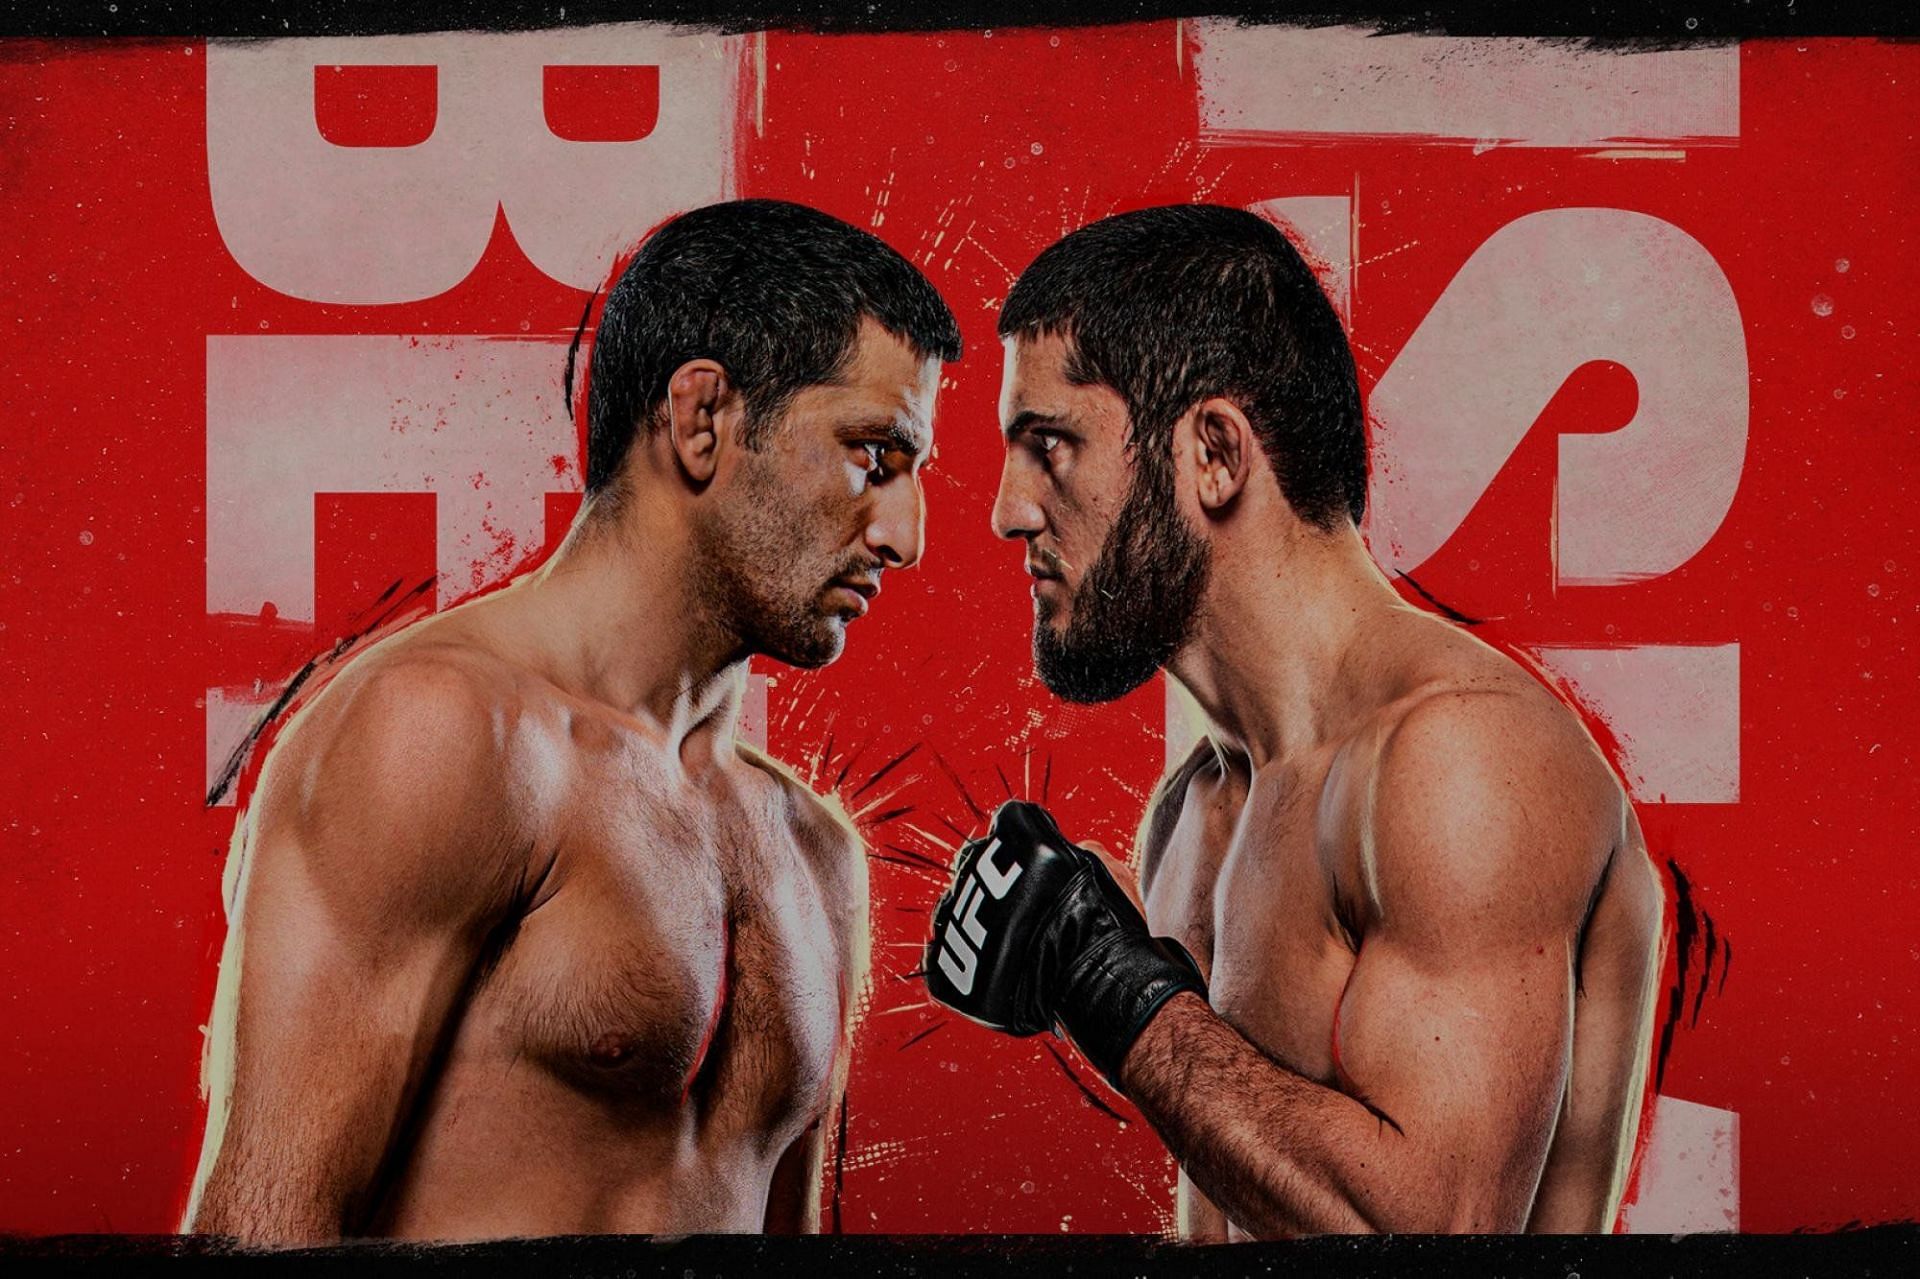 UFC Vegas 49 original poster [Image via @BigMarcel24 on Twitter]